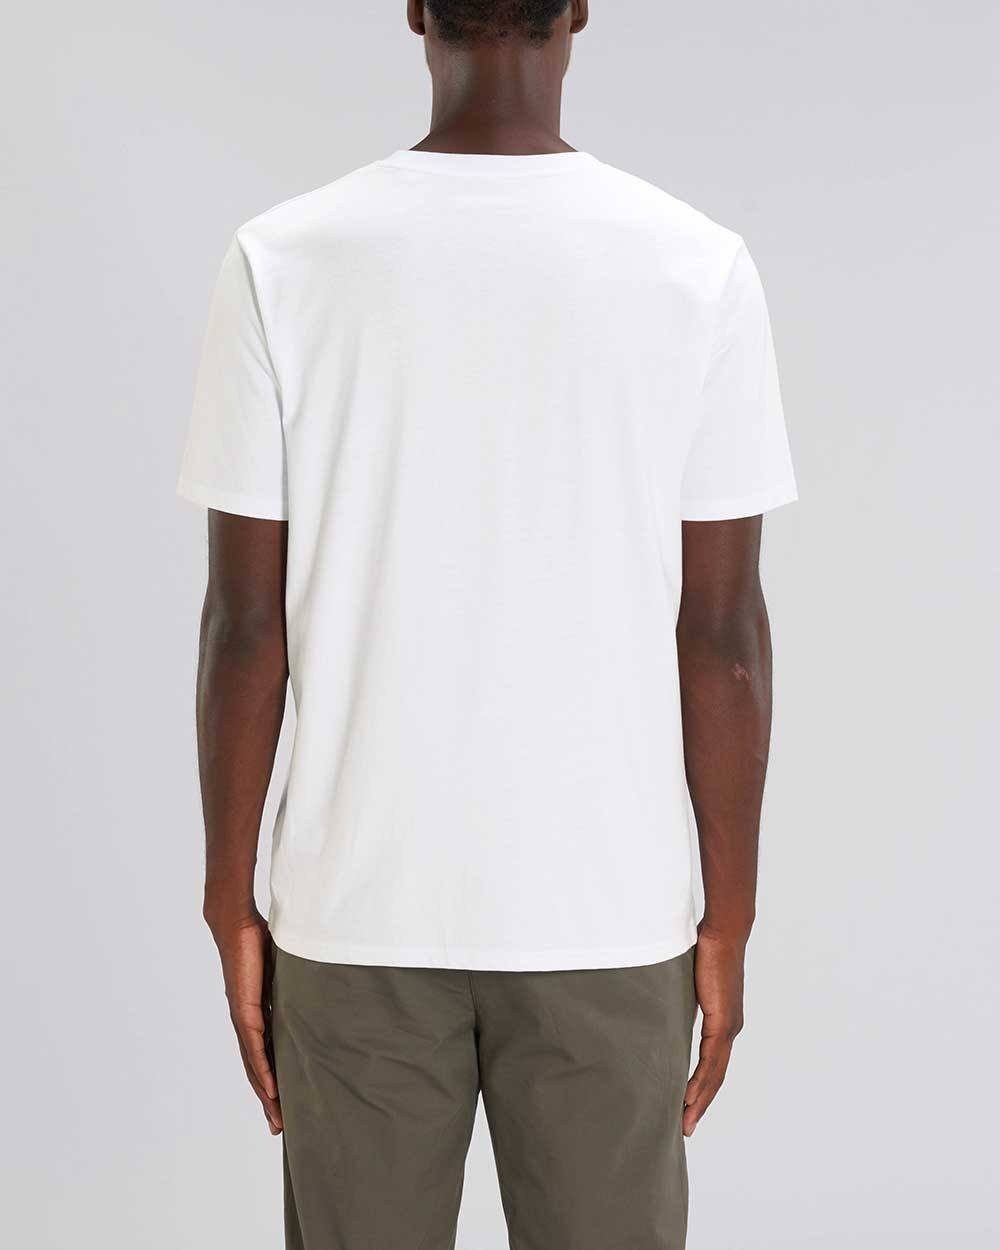 T-Shirt Pack, Männer Bio-Baumwolle, T-Shirt 2er Weiß schwere Basic, 220g/m² YTWOO